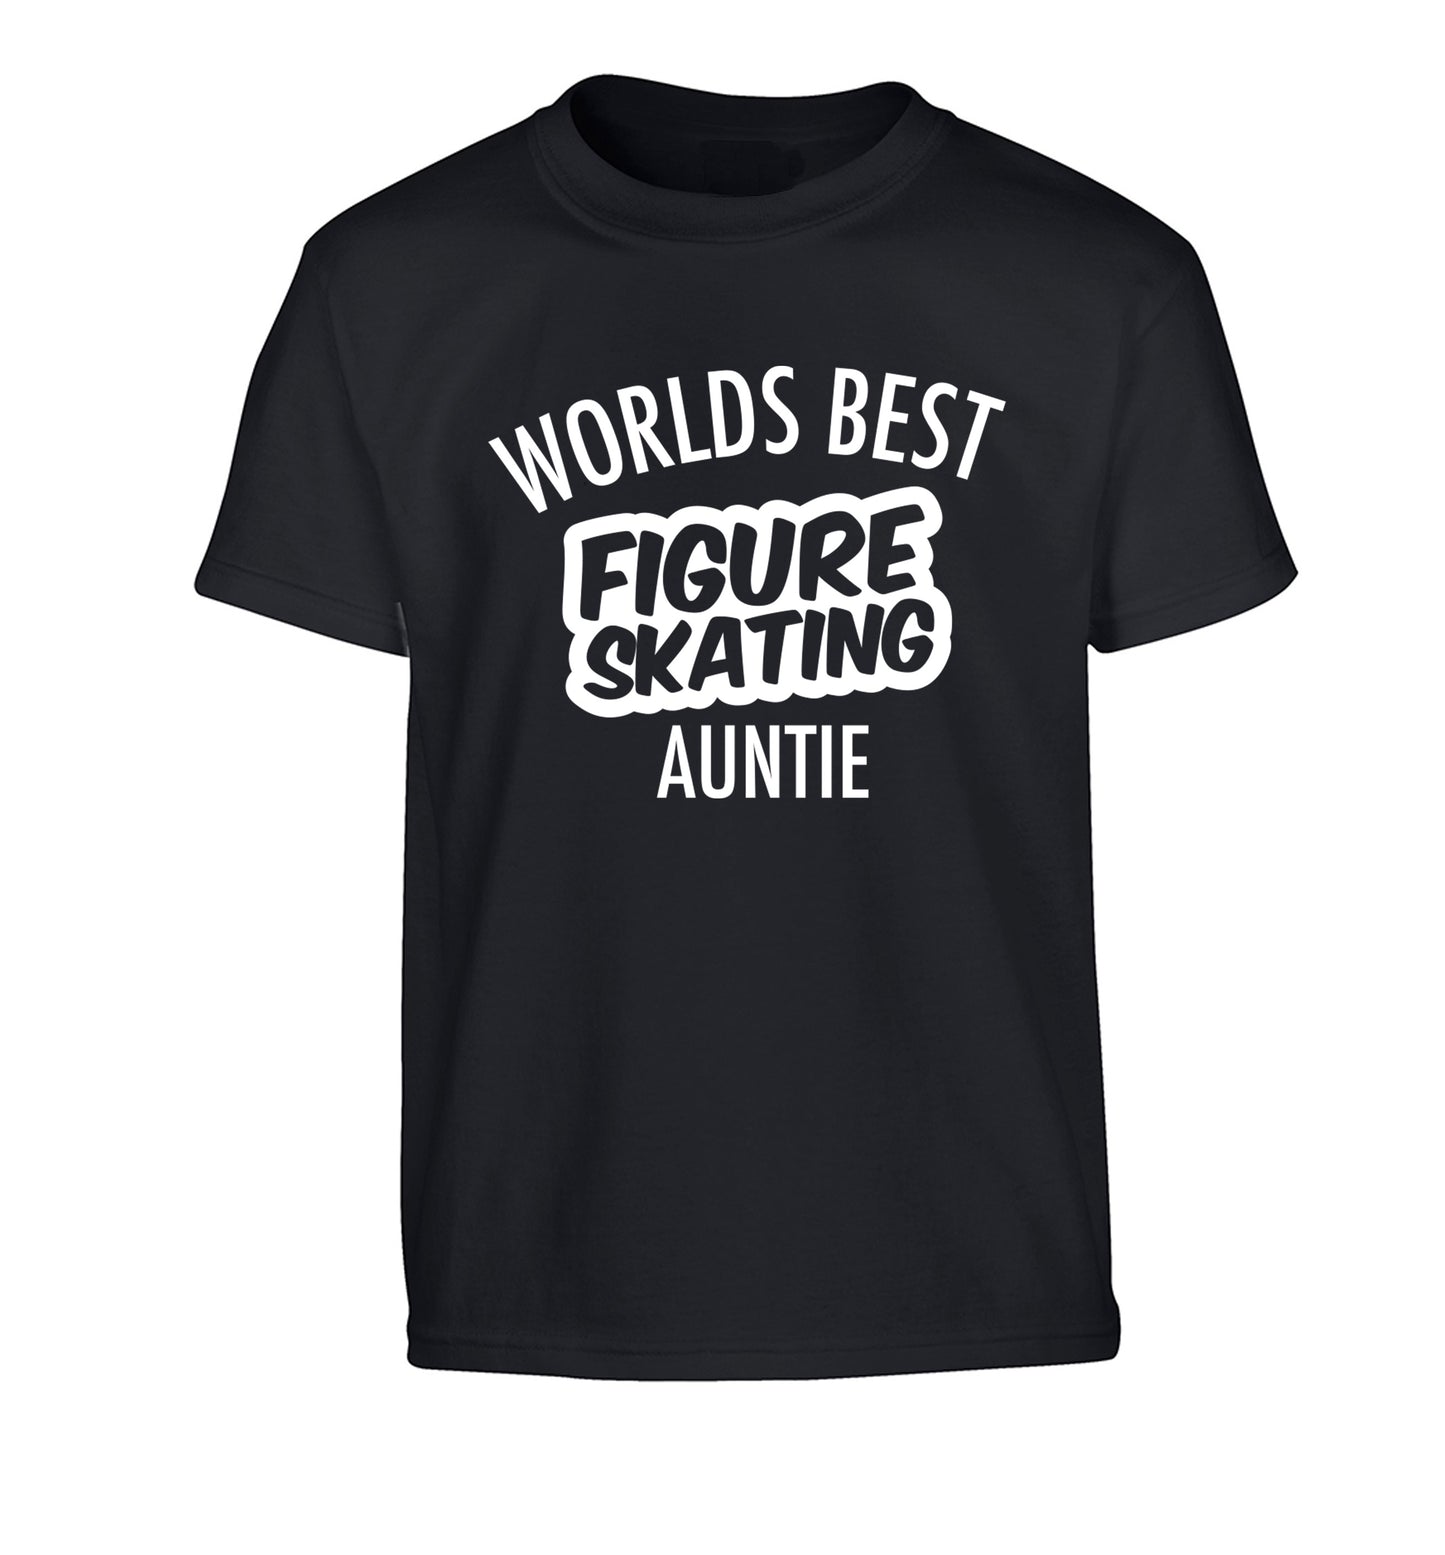 Worlds best figure skating auntie Children's black Tshirt 12-14 Years